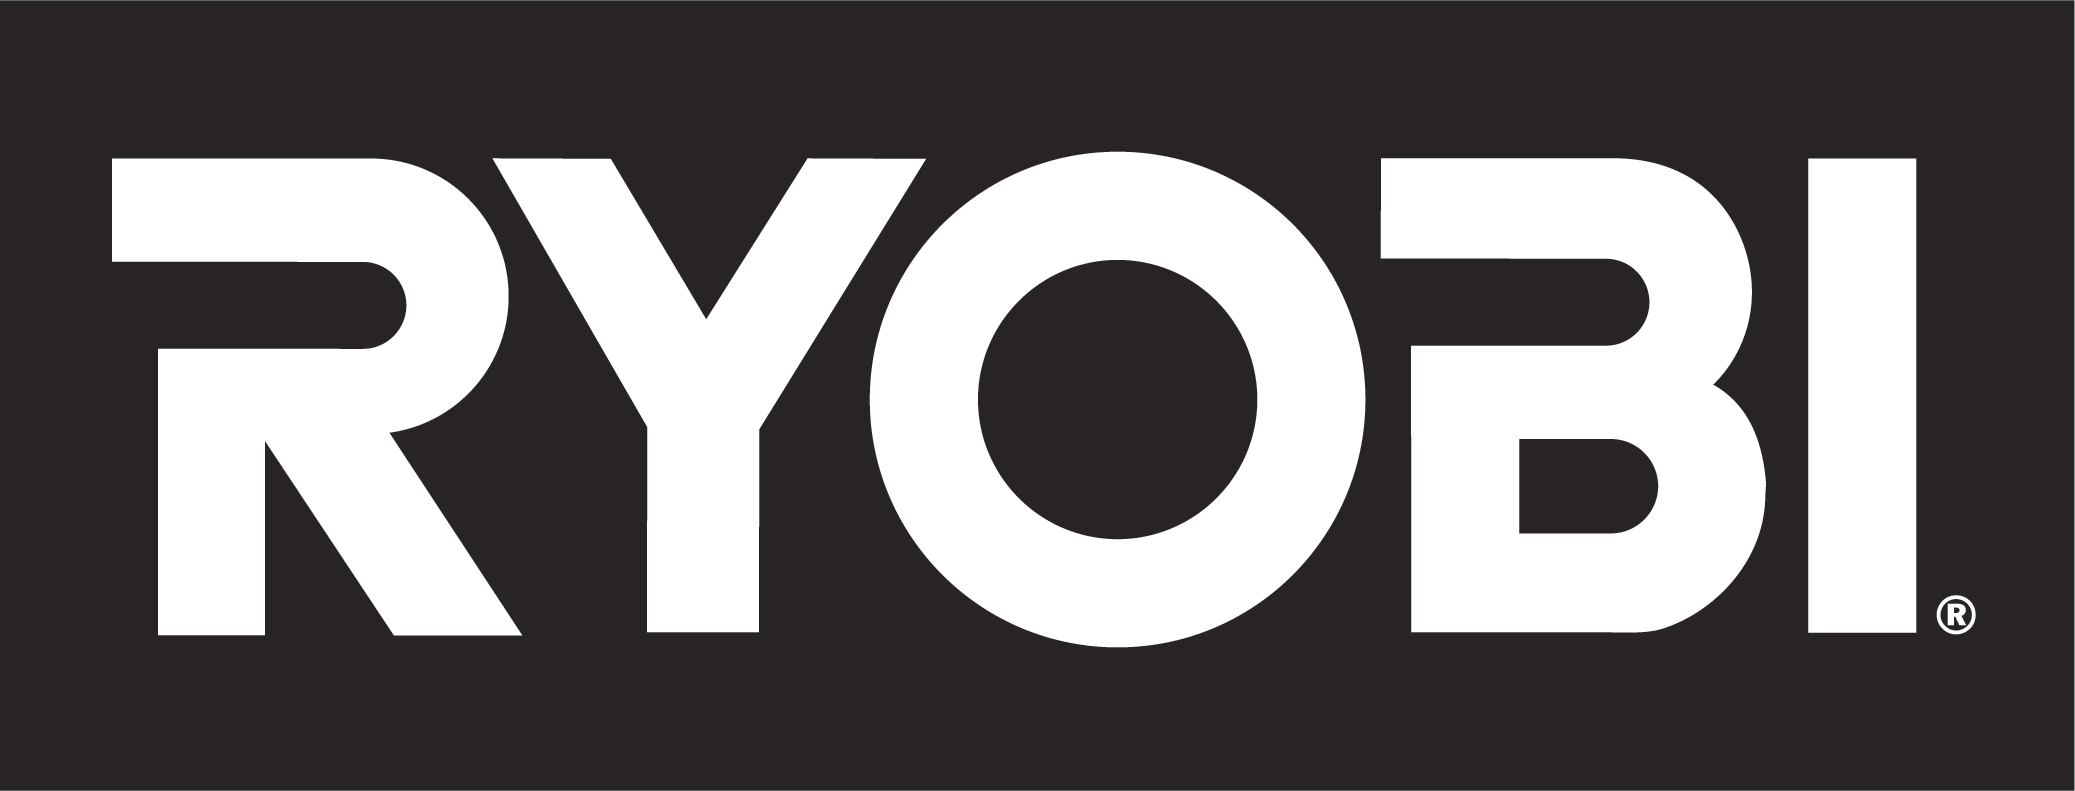 RYOBI_logo_2020_%C2%AE_Final.jpg